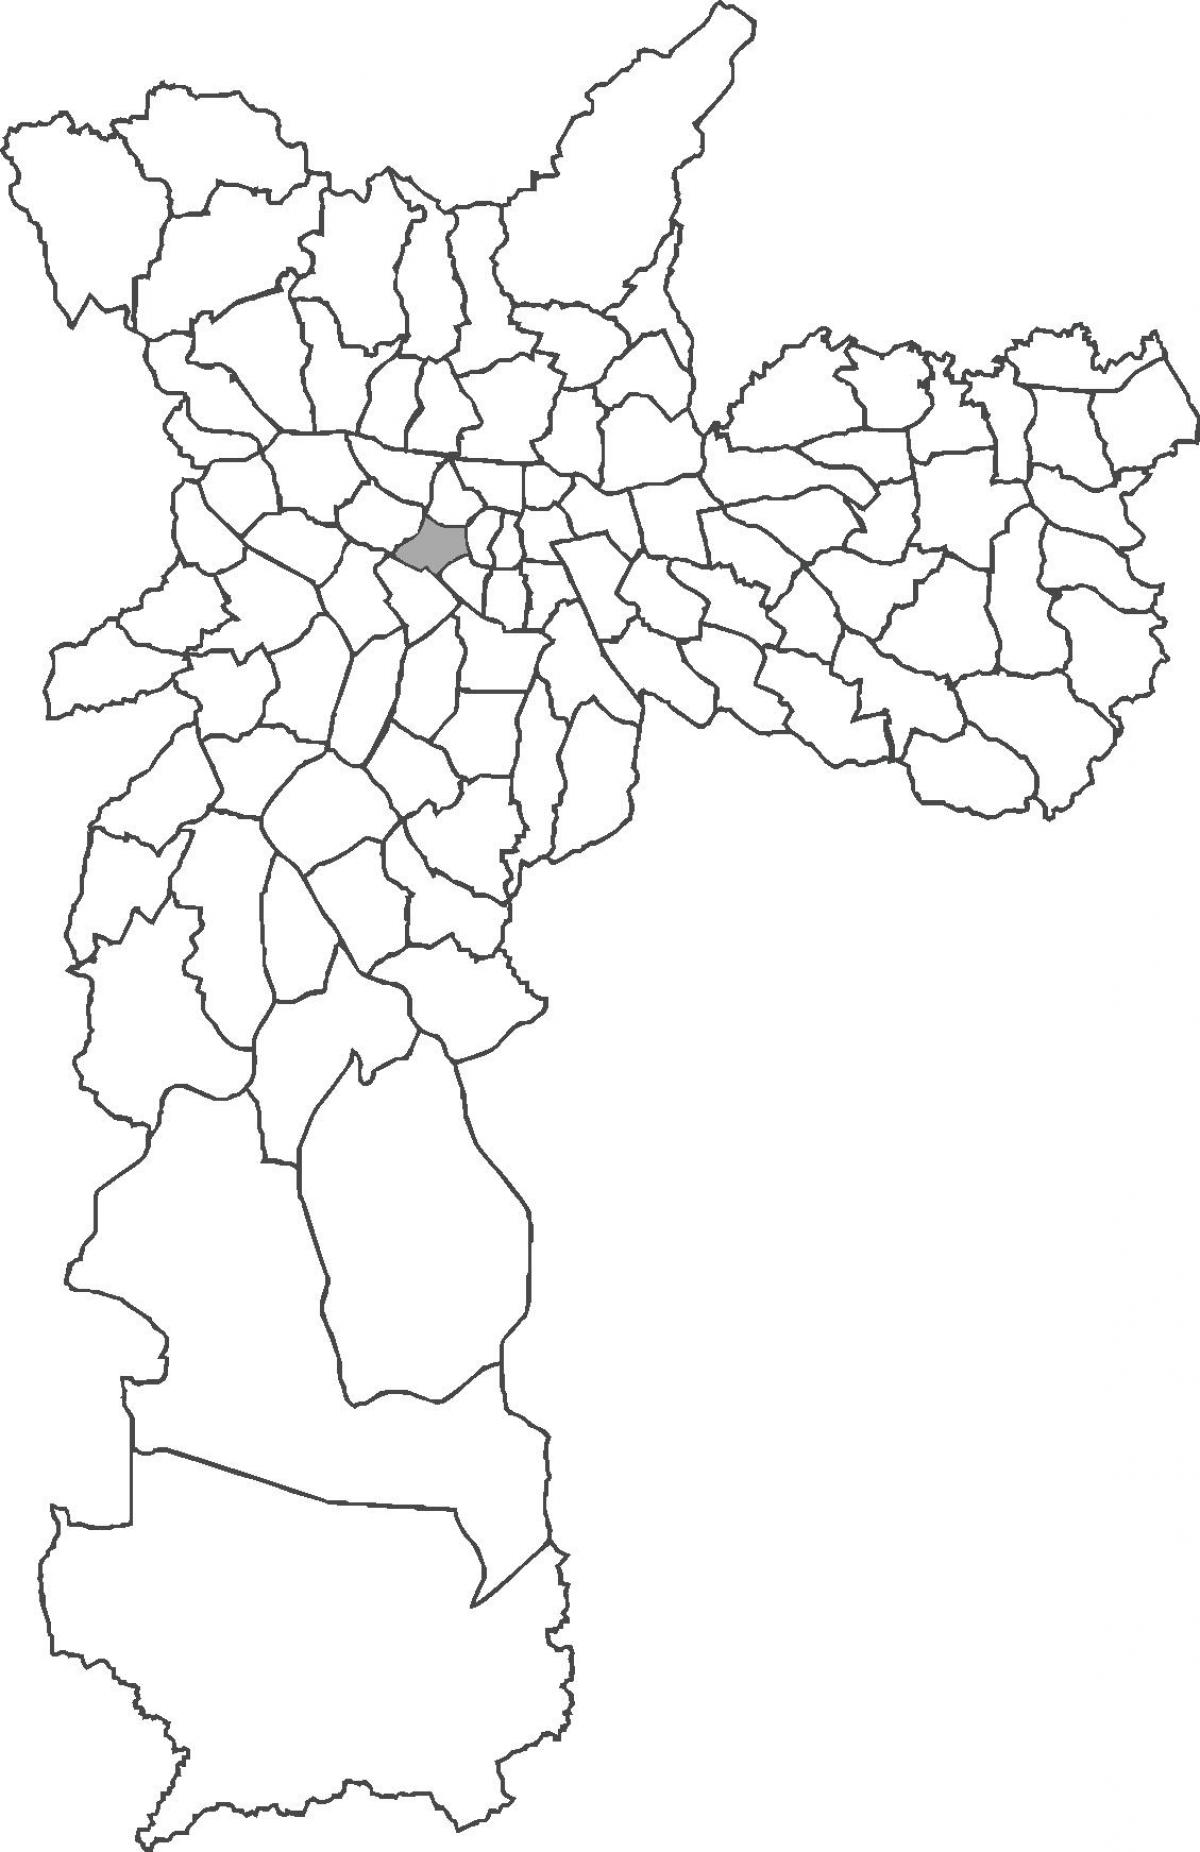 Քարտեզ Консоласан շրջան